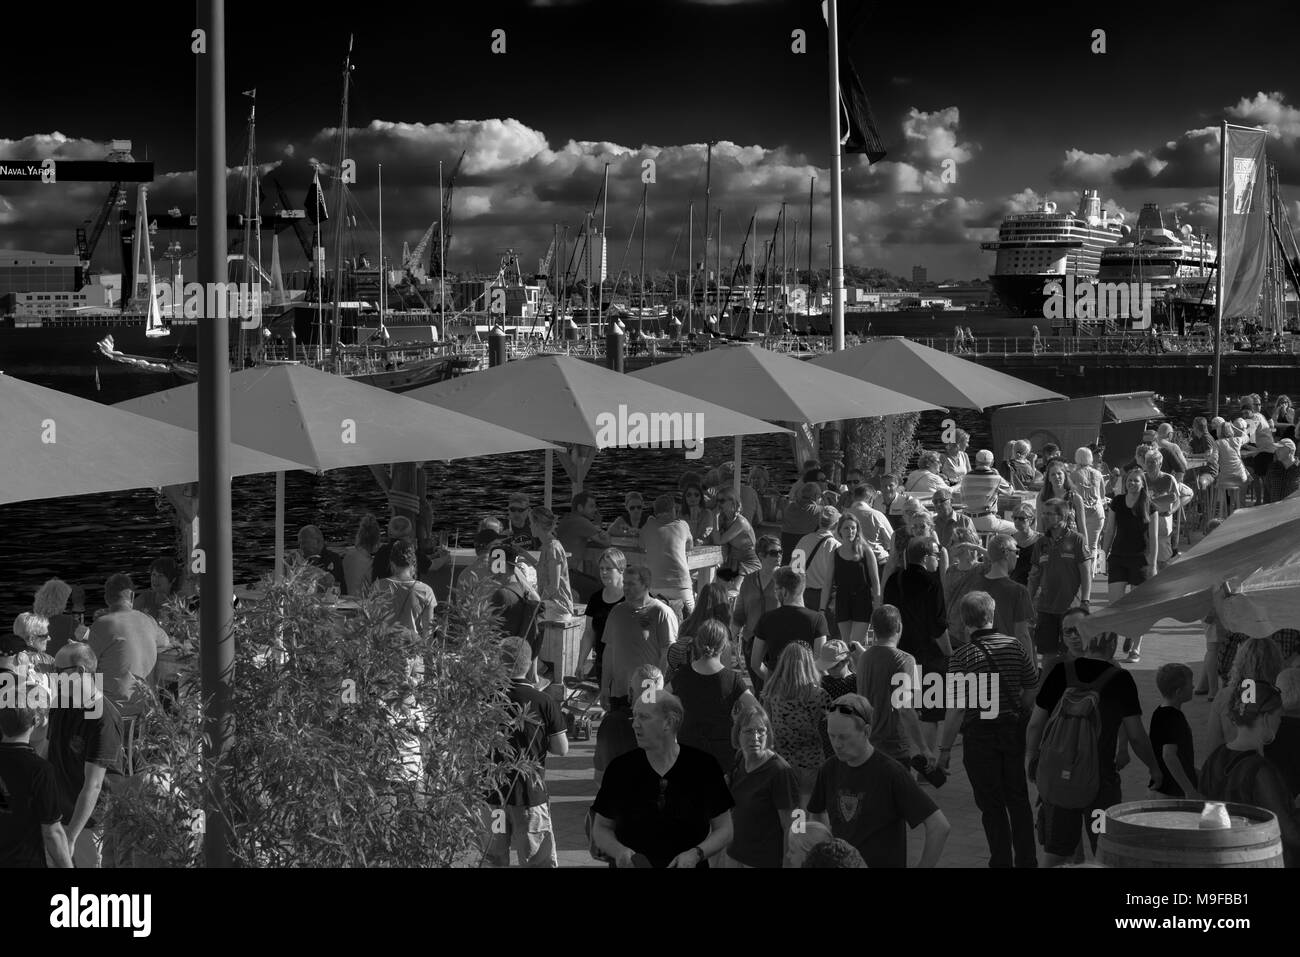 Las multitudes de gente en el fiordo de Kiel durante la "Semana de Kiel" o "Kieler Woche", el mayor evento de vela en todo el mundo, Kiel, Schleswig-Holstein, Alemania Foto de stock